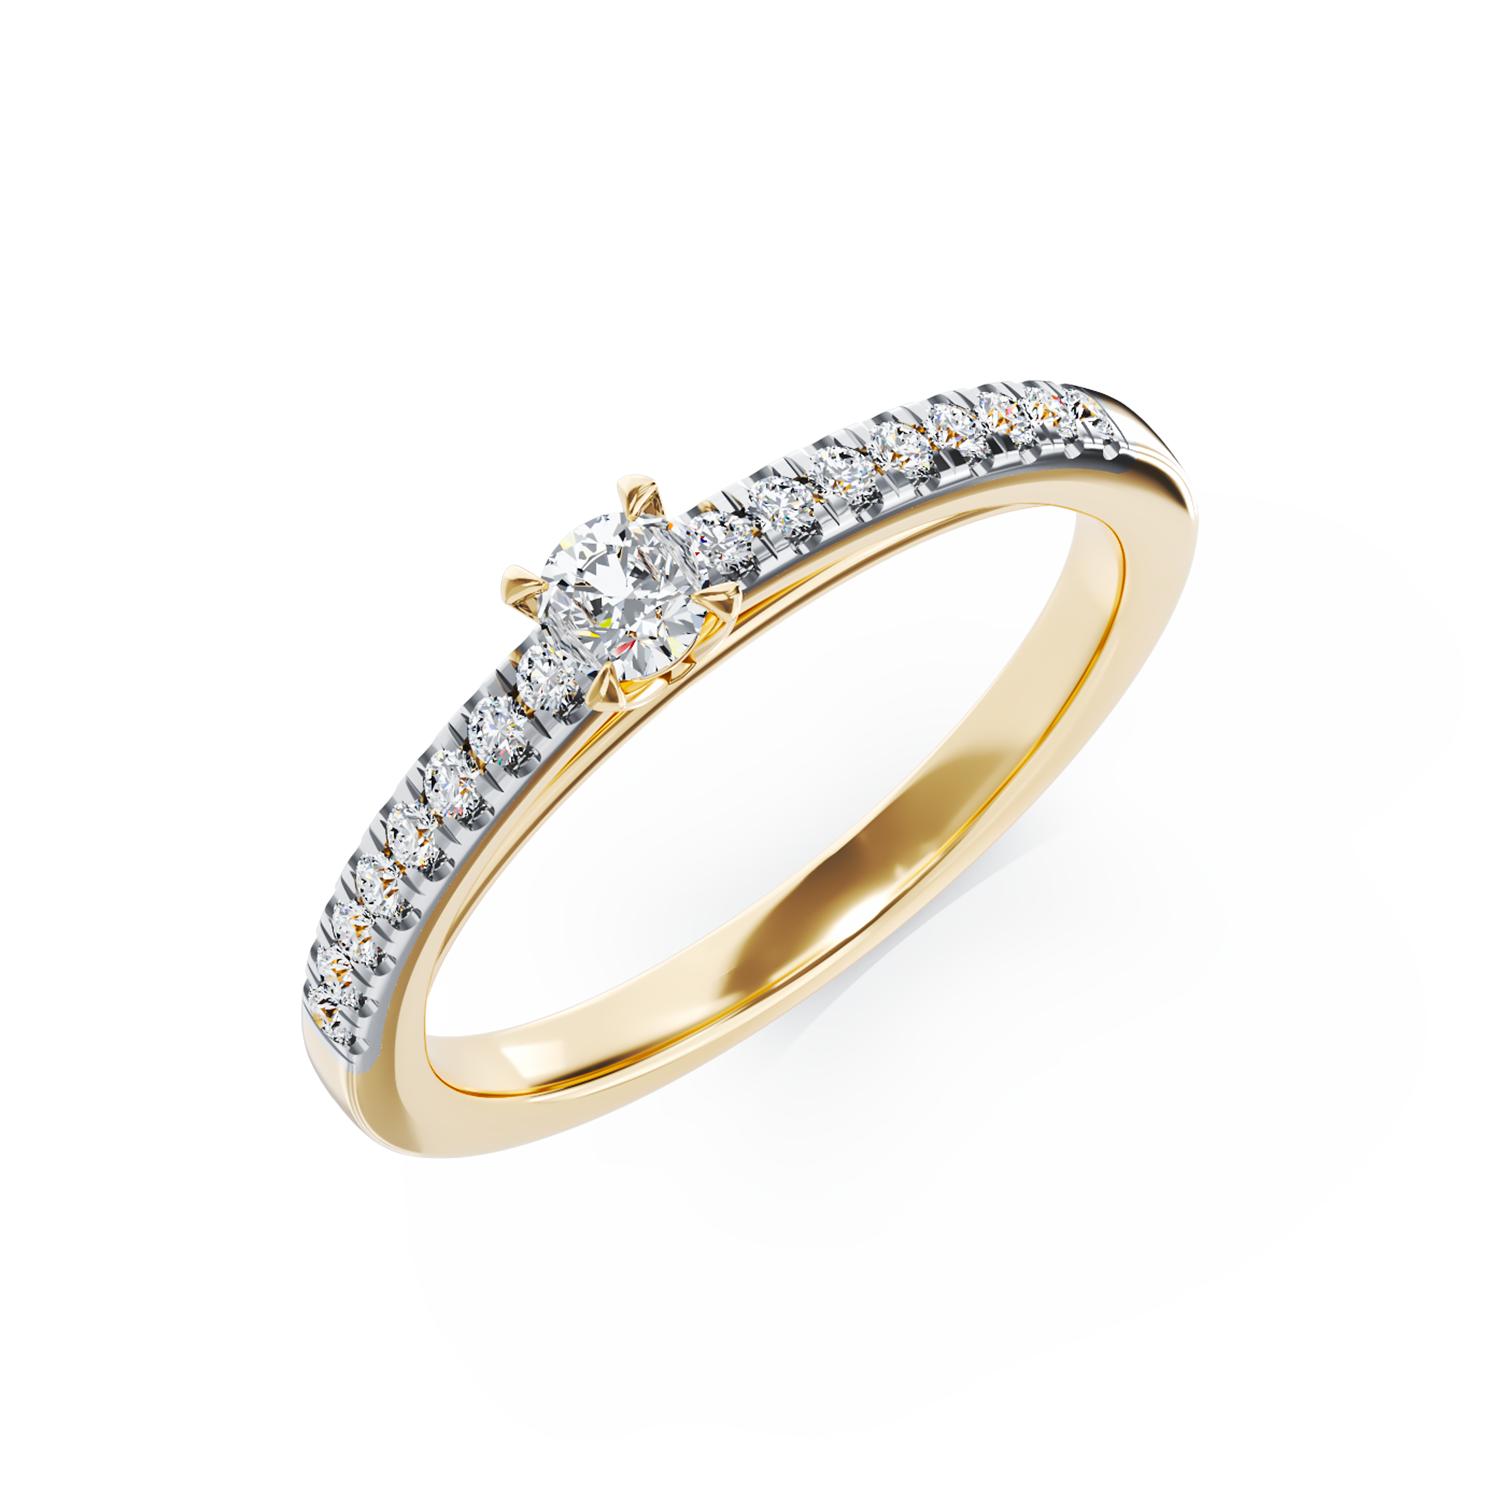 Eljegyzési gyűrű 18K-os sárga aranyból 0,1ct gyémánttal és 0,148ct gyémánttal. Gramm: 2,10